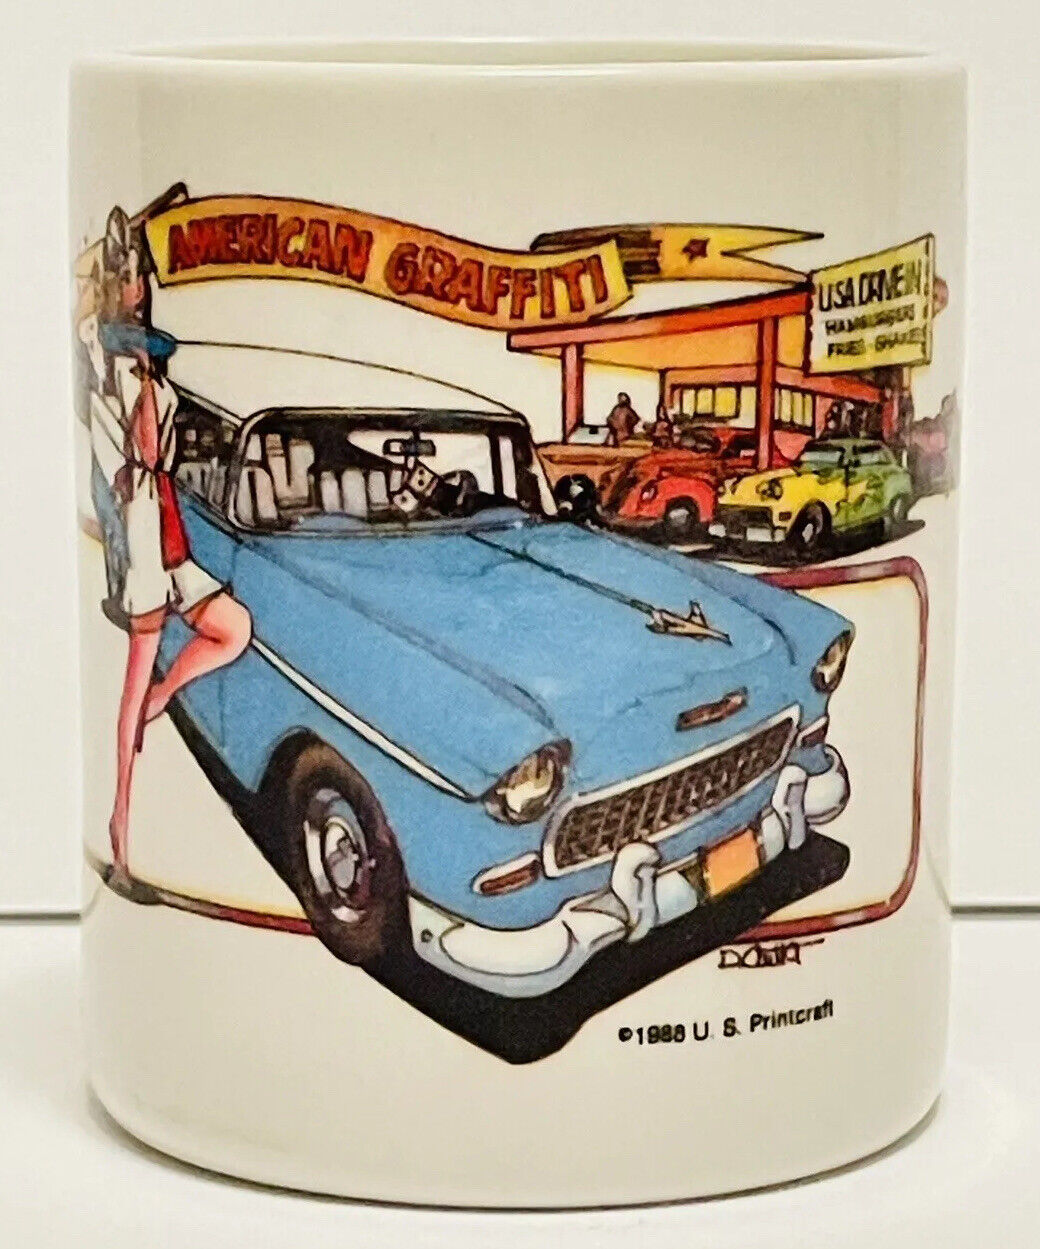 American Graffiti Drive-in Hot Rods ceramic mug 1988 U.S. Printcraft.